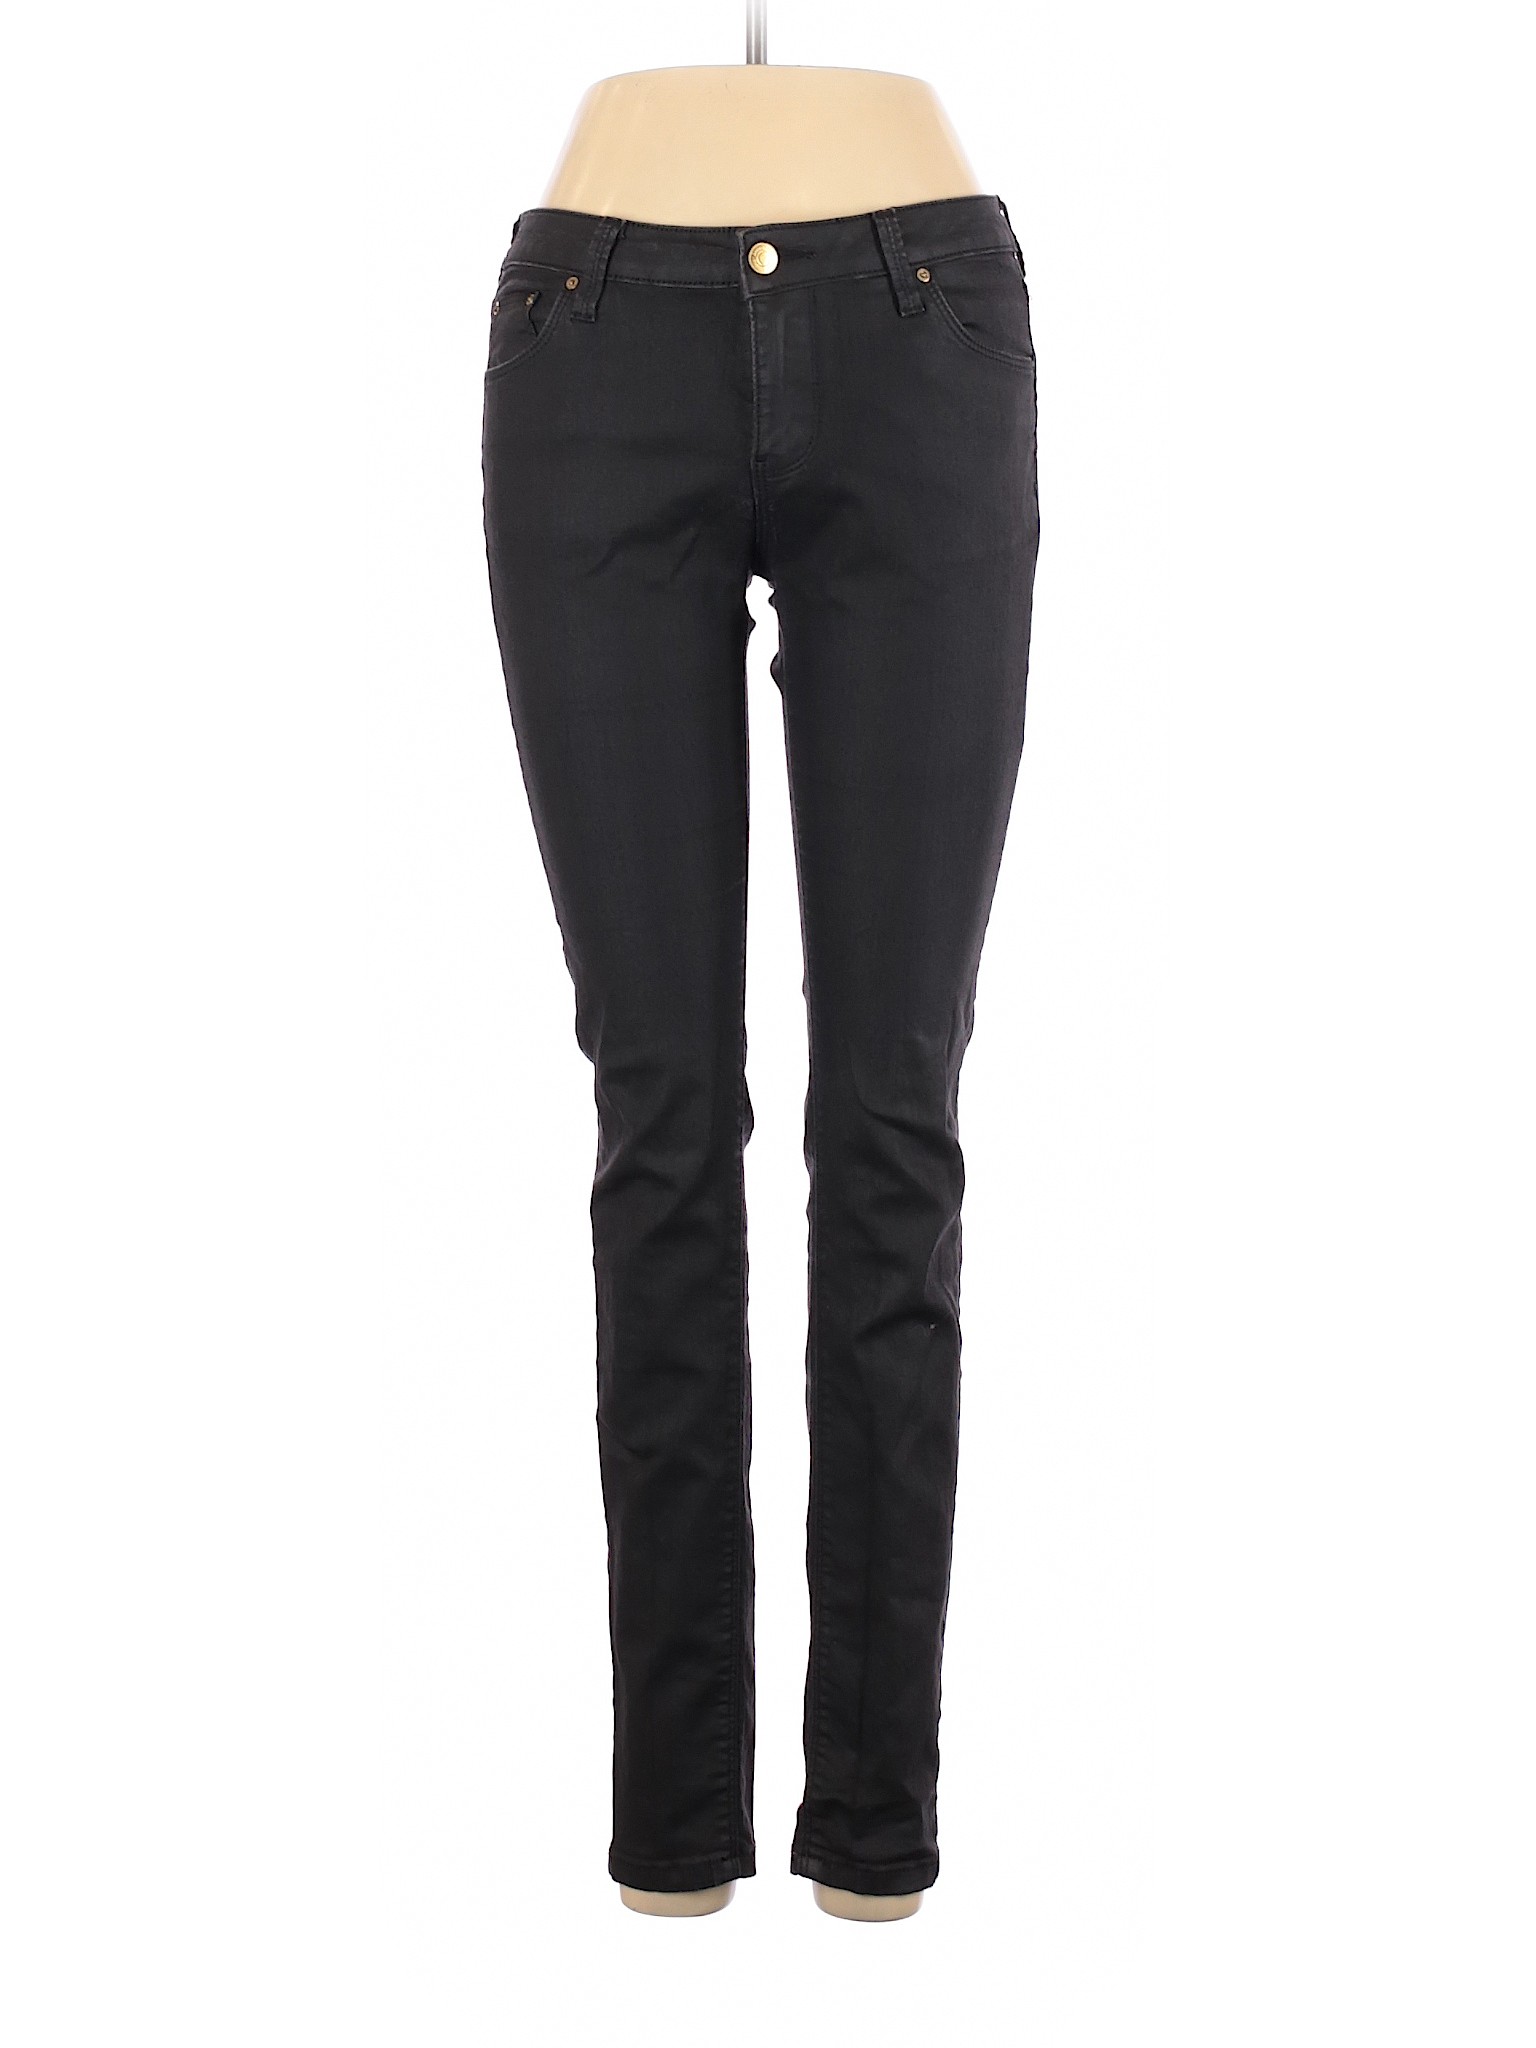 Leara Woman Women Black Jeans 4 | eBay